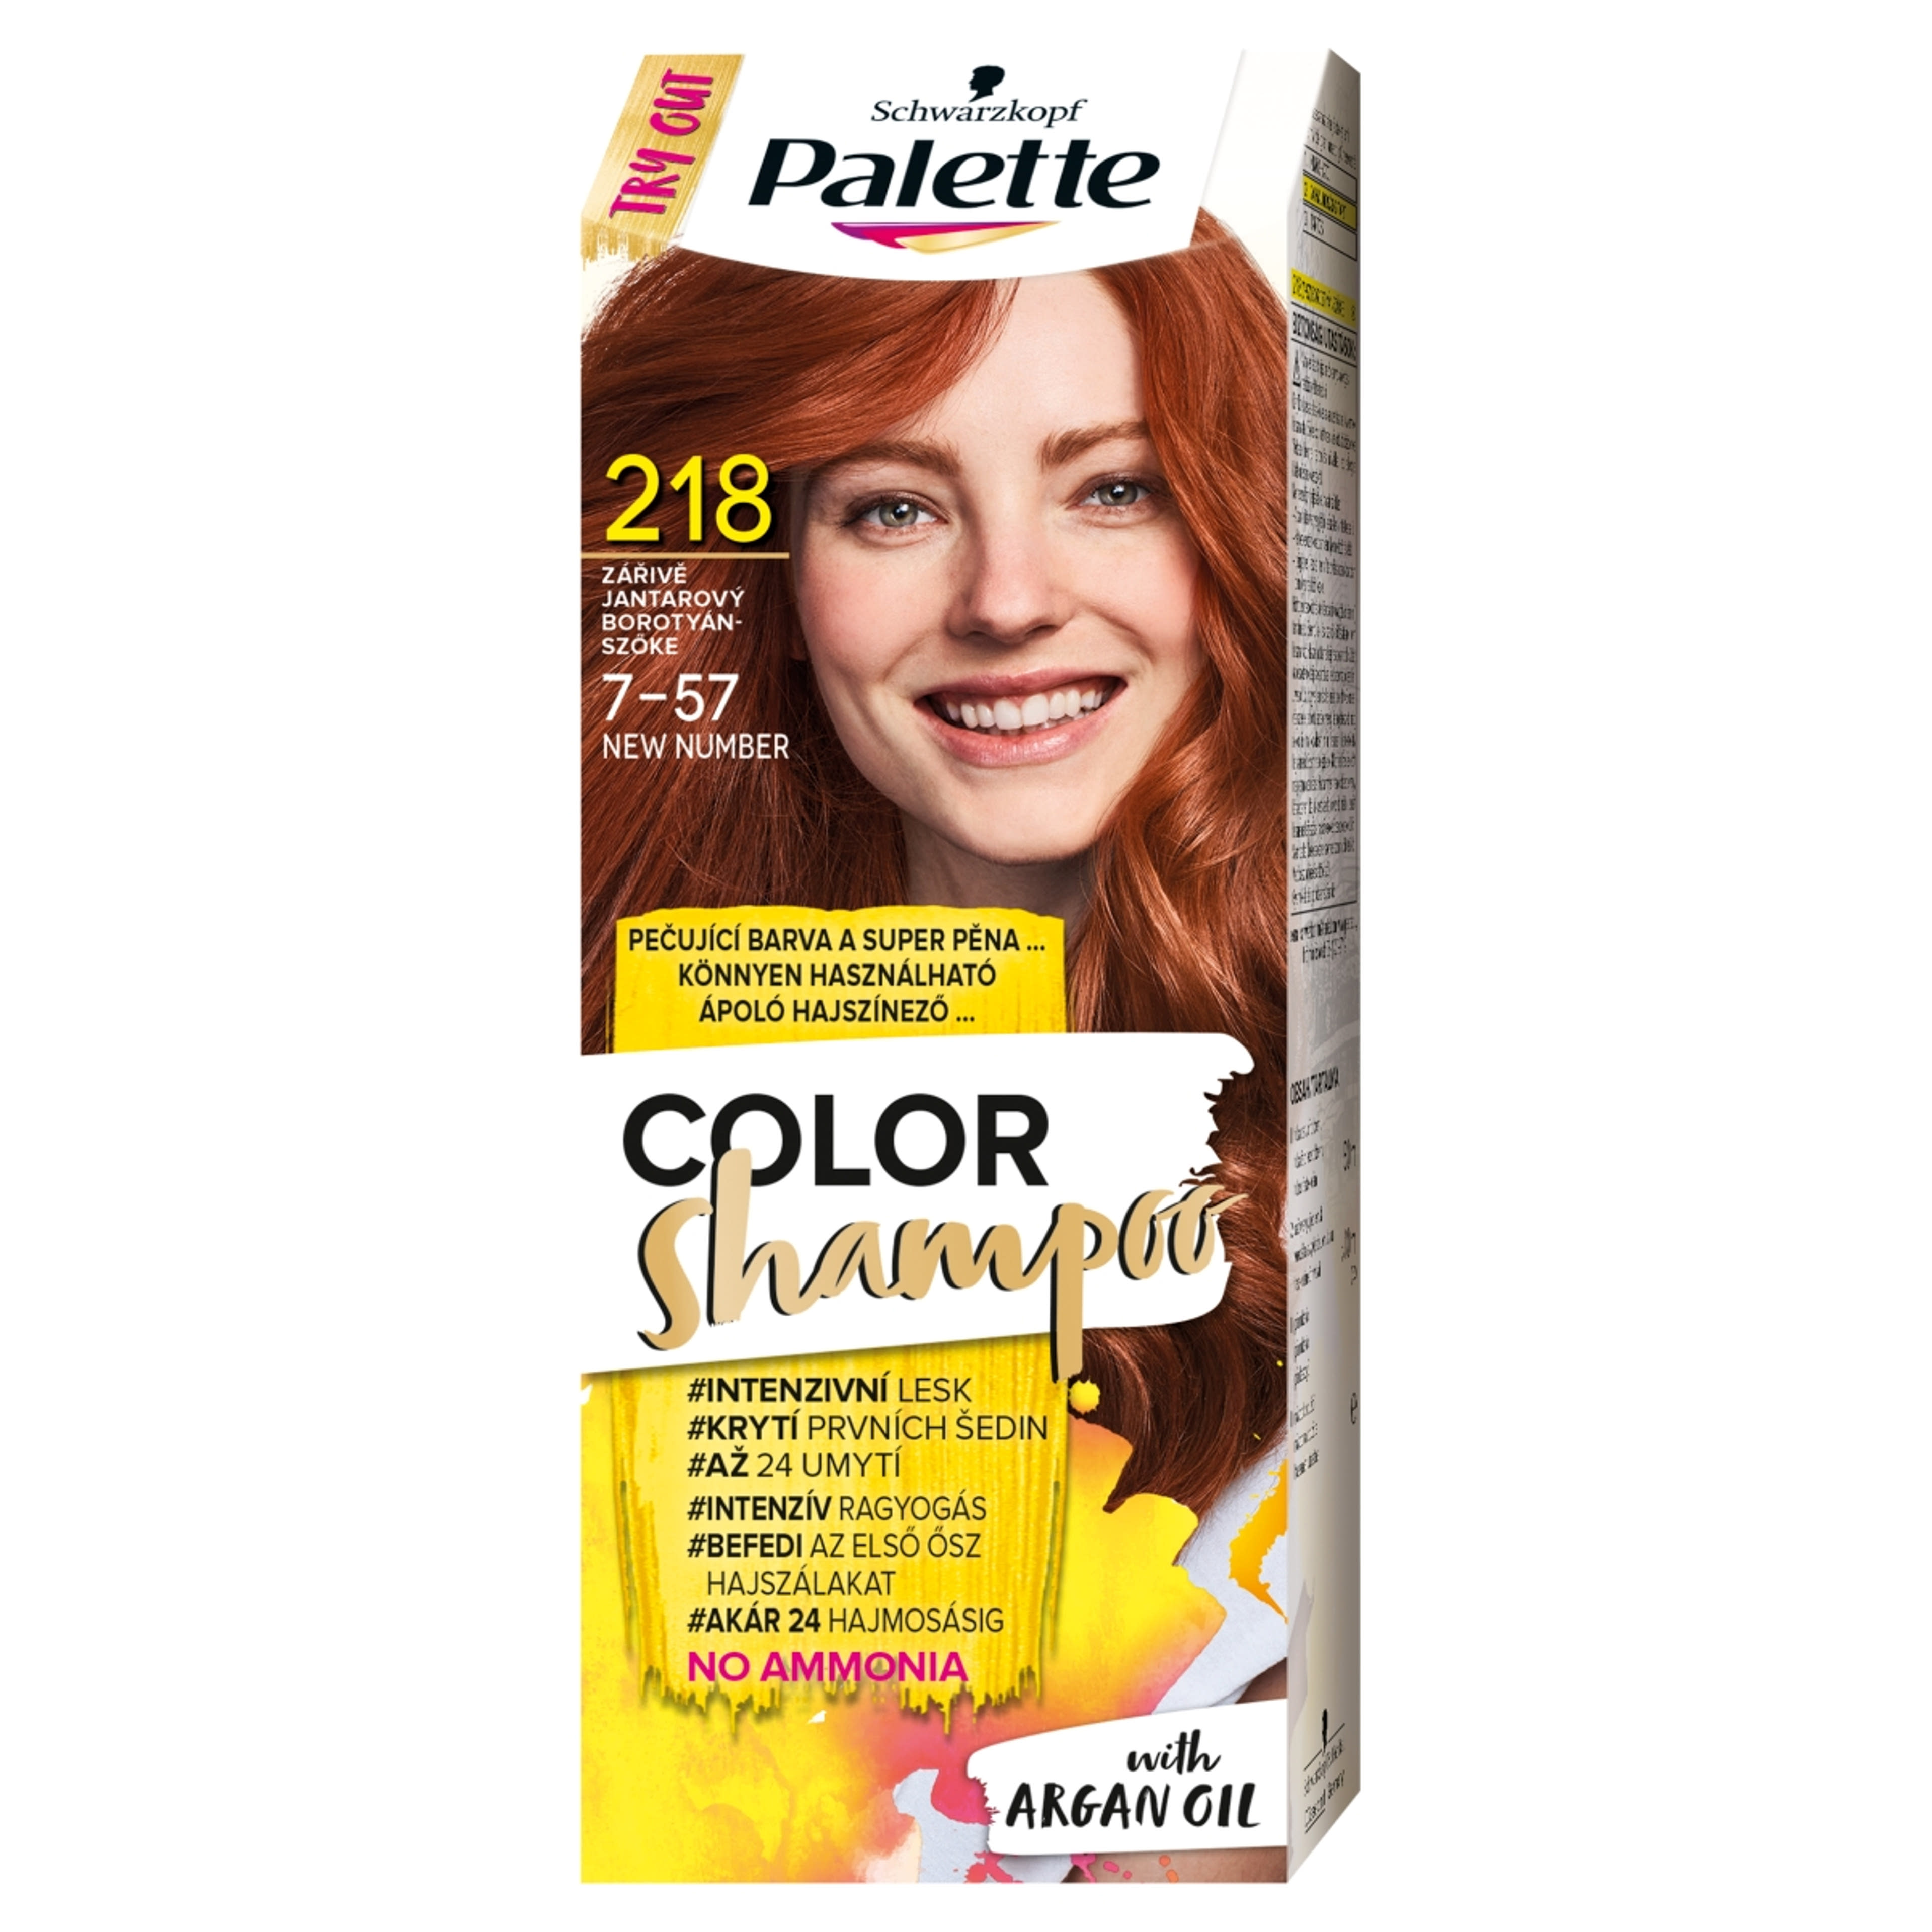 Schwarzkopf Palette Color Shampoo hajfesték 218 borostyánszőke - 1 db